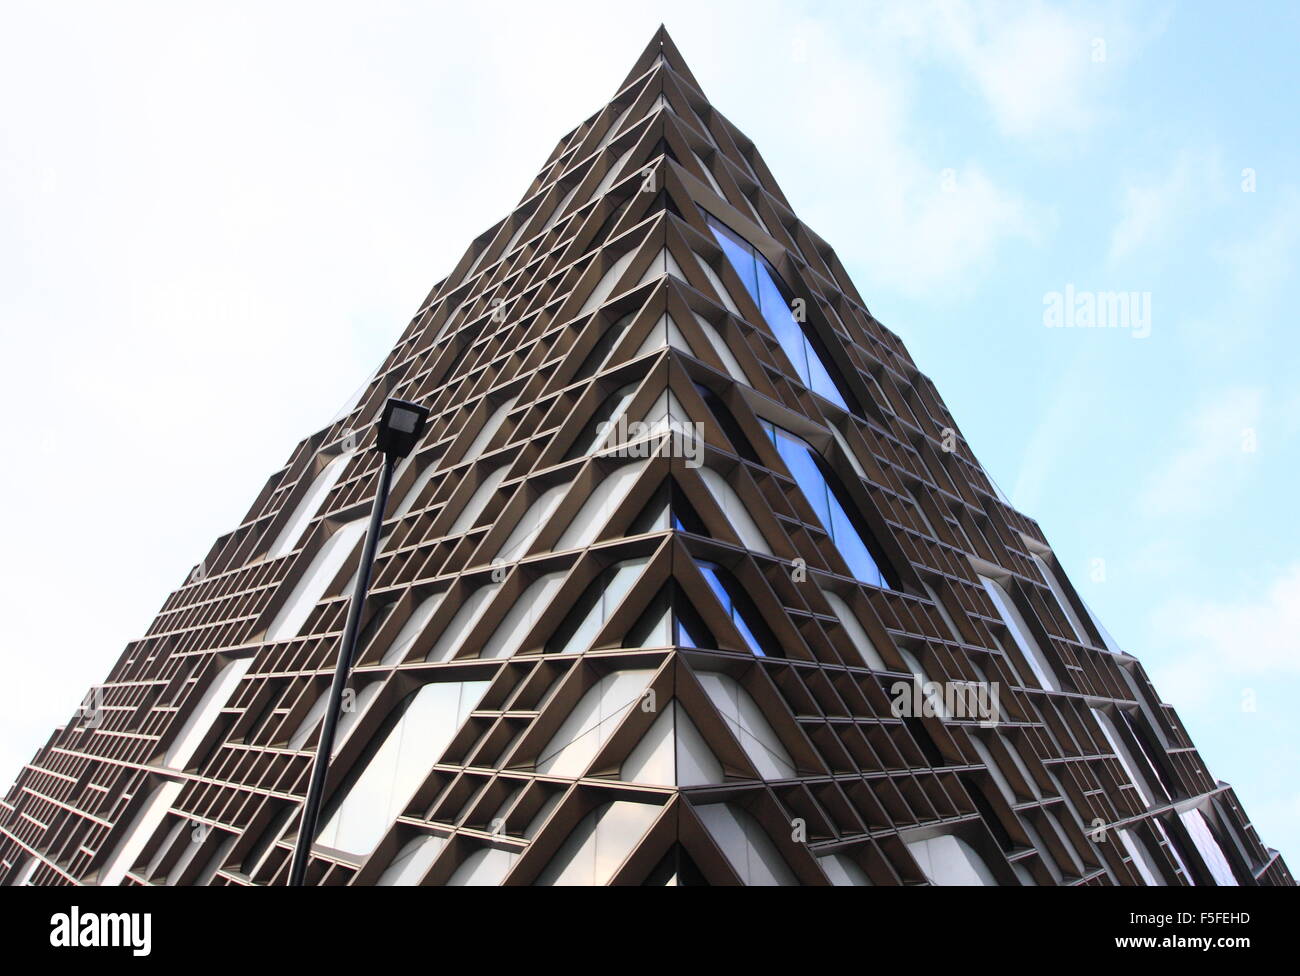 Das Diamant-Gebäude; Hörsäle der Universität von Sheffield, Sheffield Stadtzentrum, Yorkshire England UK - 2015 Stockfoto